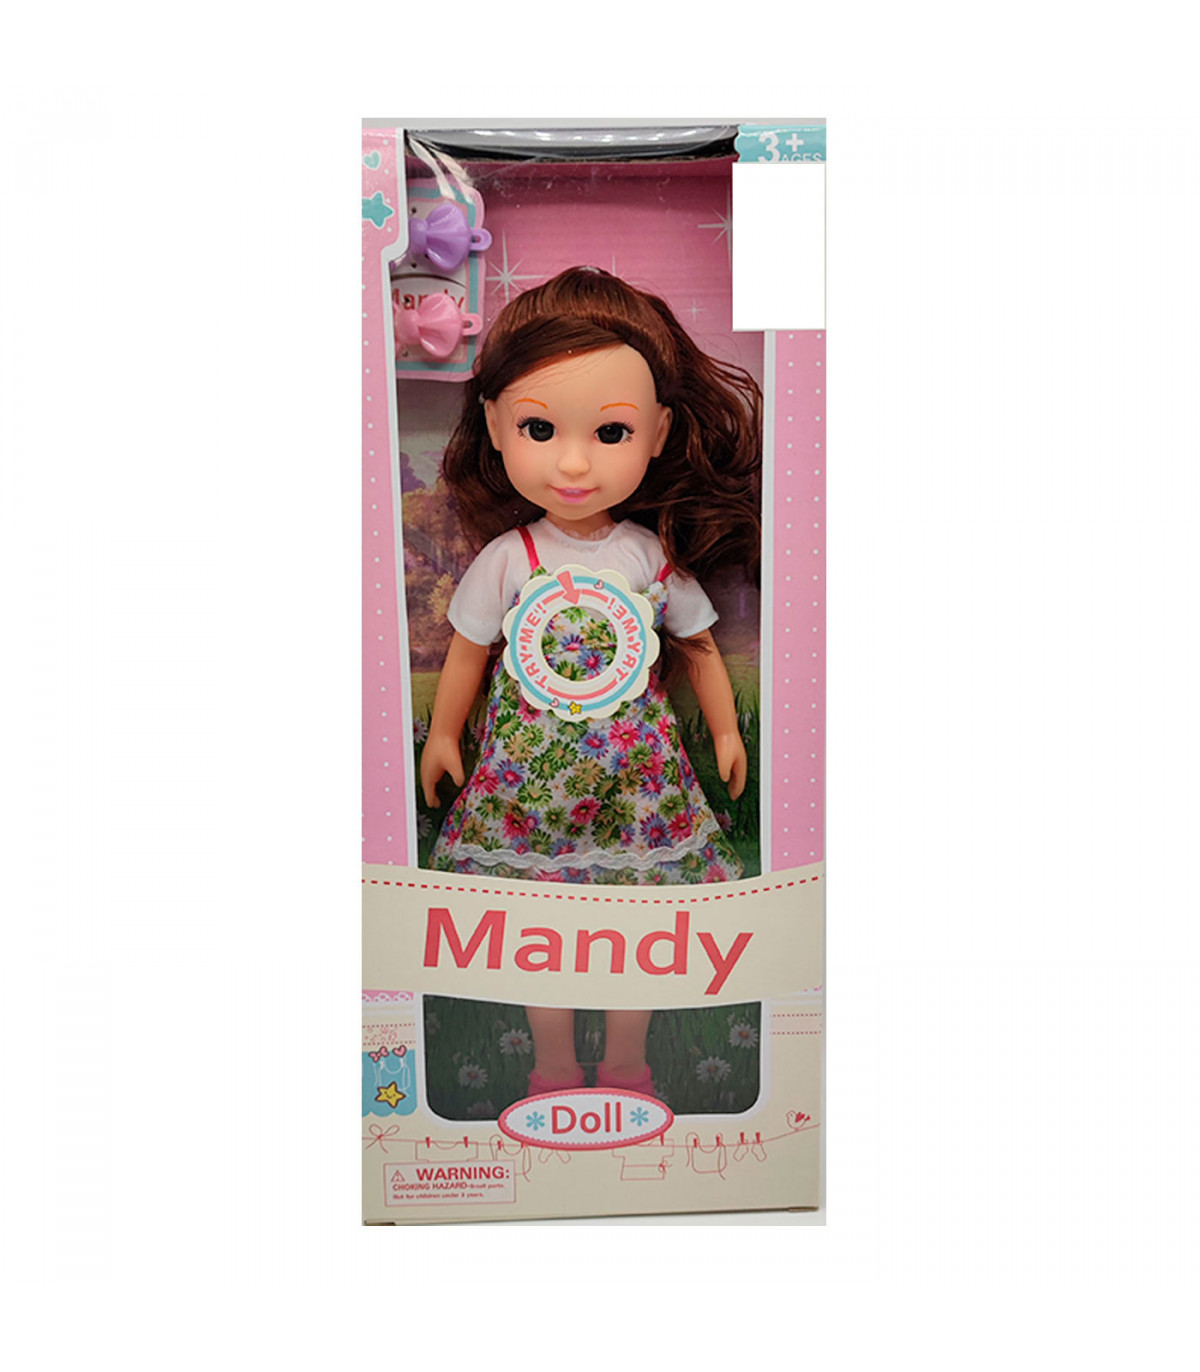 Muñeca mandy doll con sonidos y vestidos de colores aleatorios, dimensiones 31 x 11 x 4 cm (alto x ancho x profundo